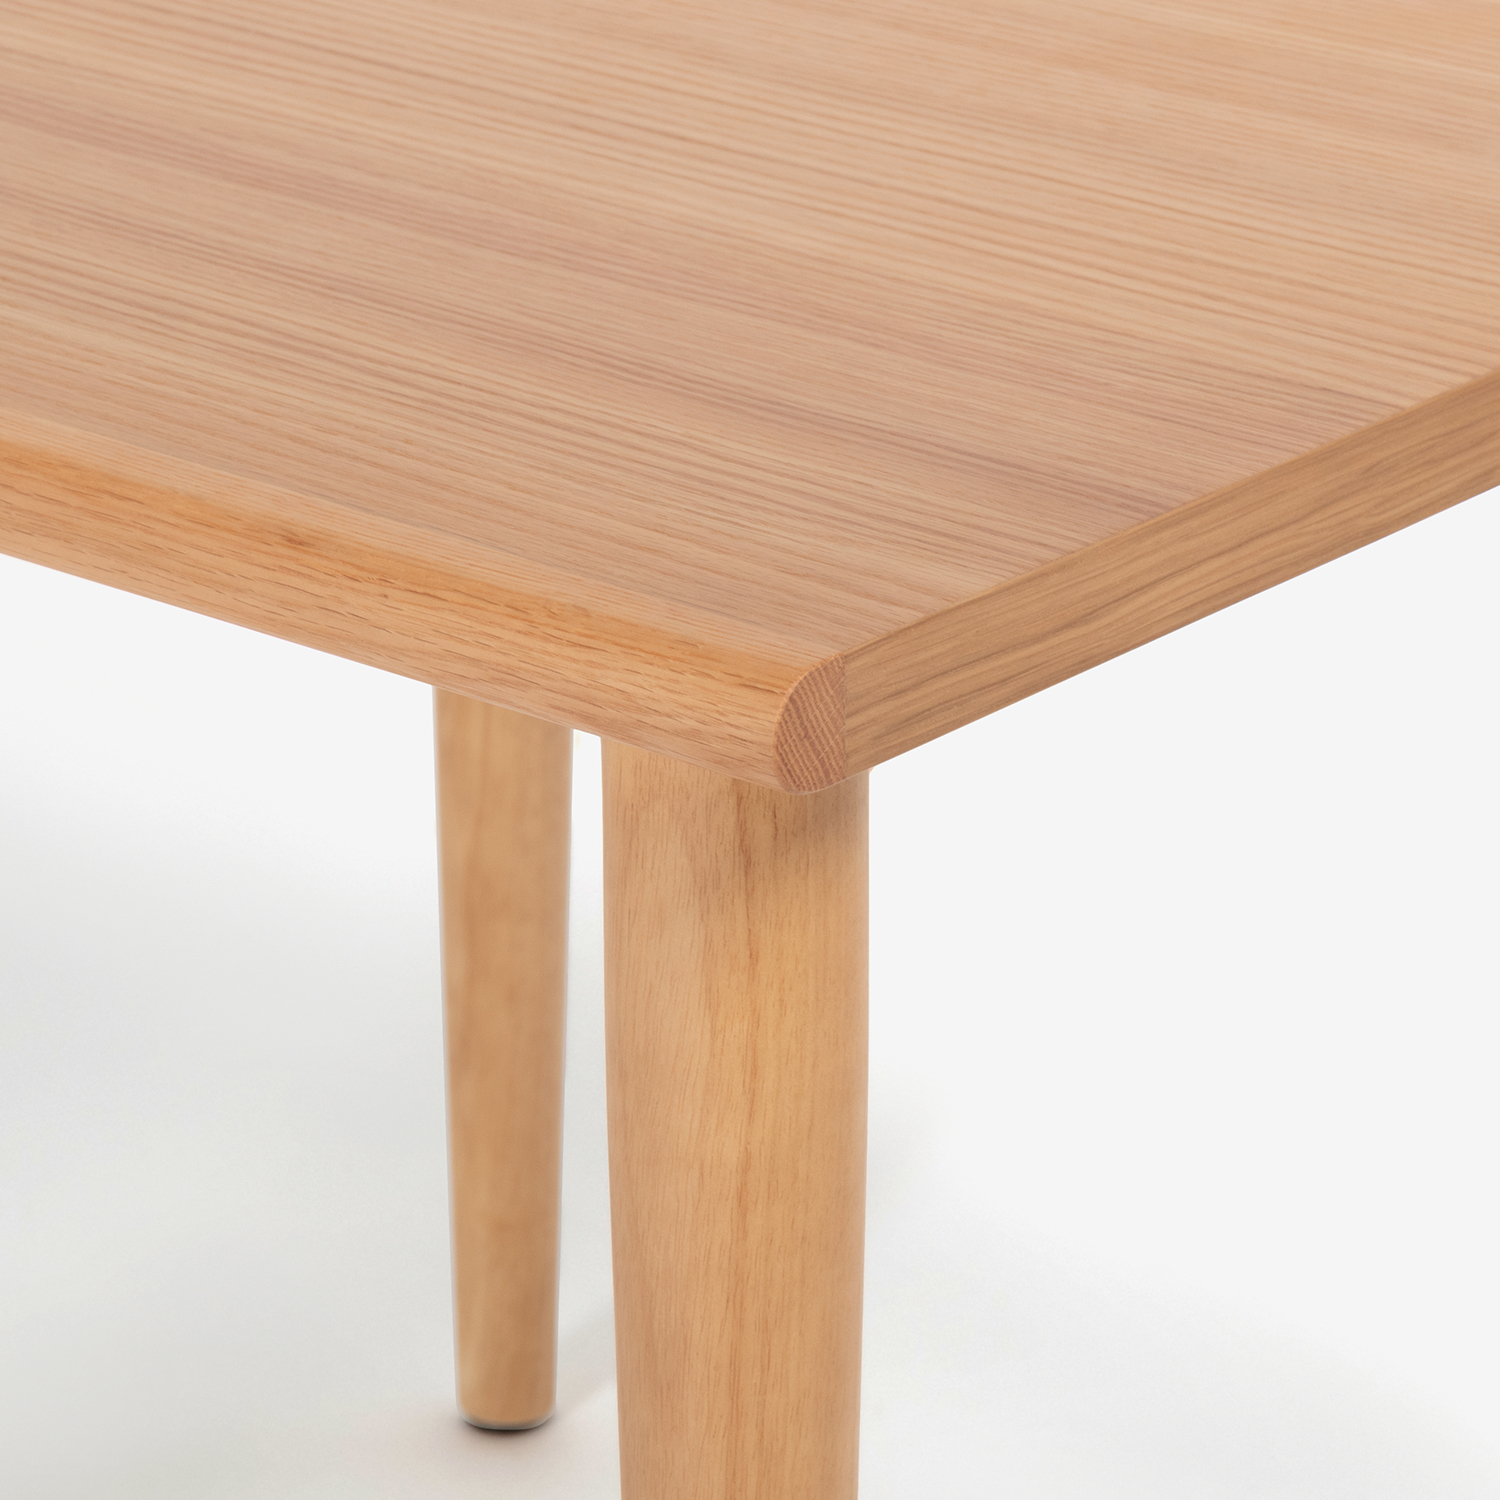 ダイニングテーブル「ユノ3」幅80cm レッドオーク材 ホワイトオーク色 丸脚